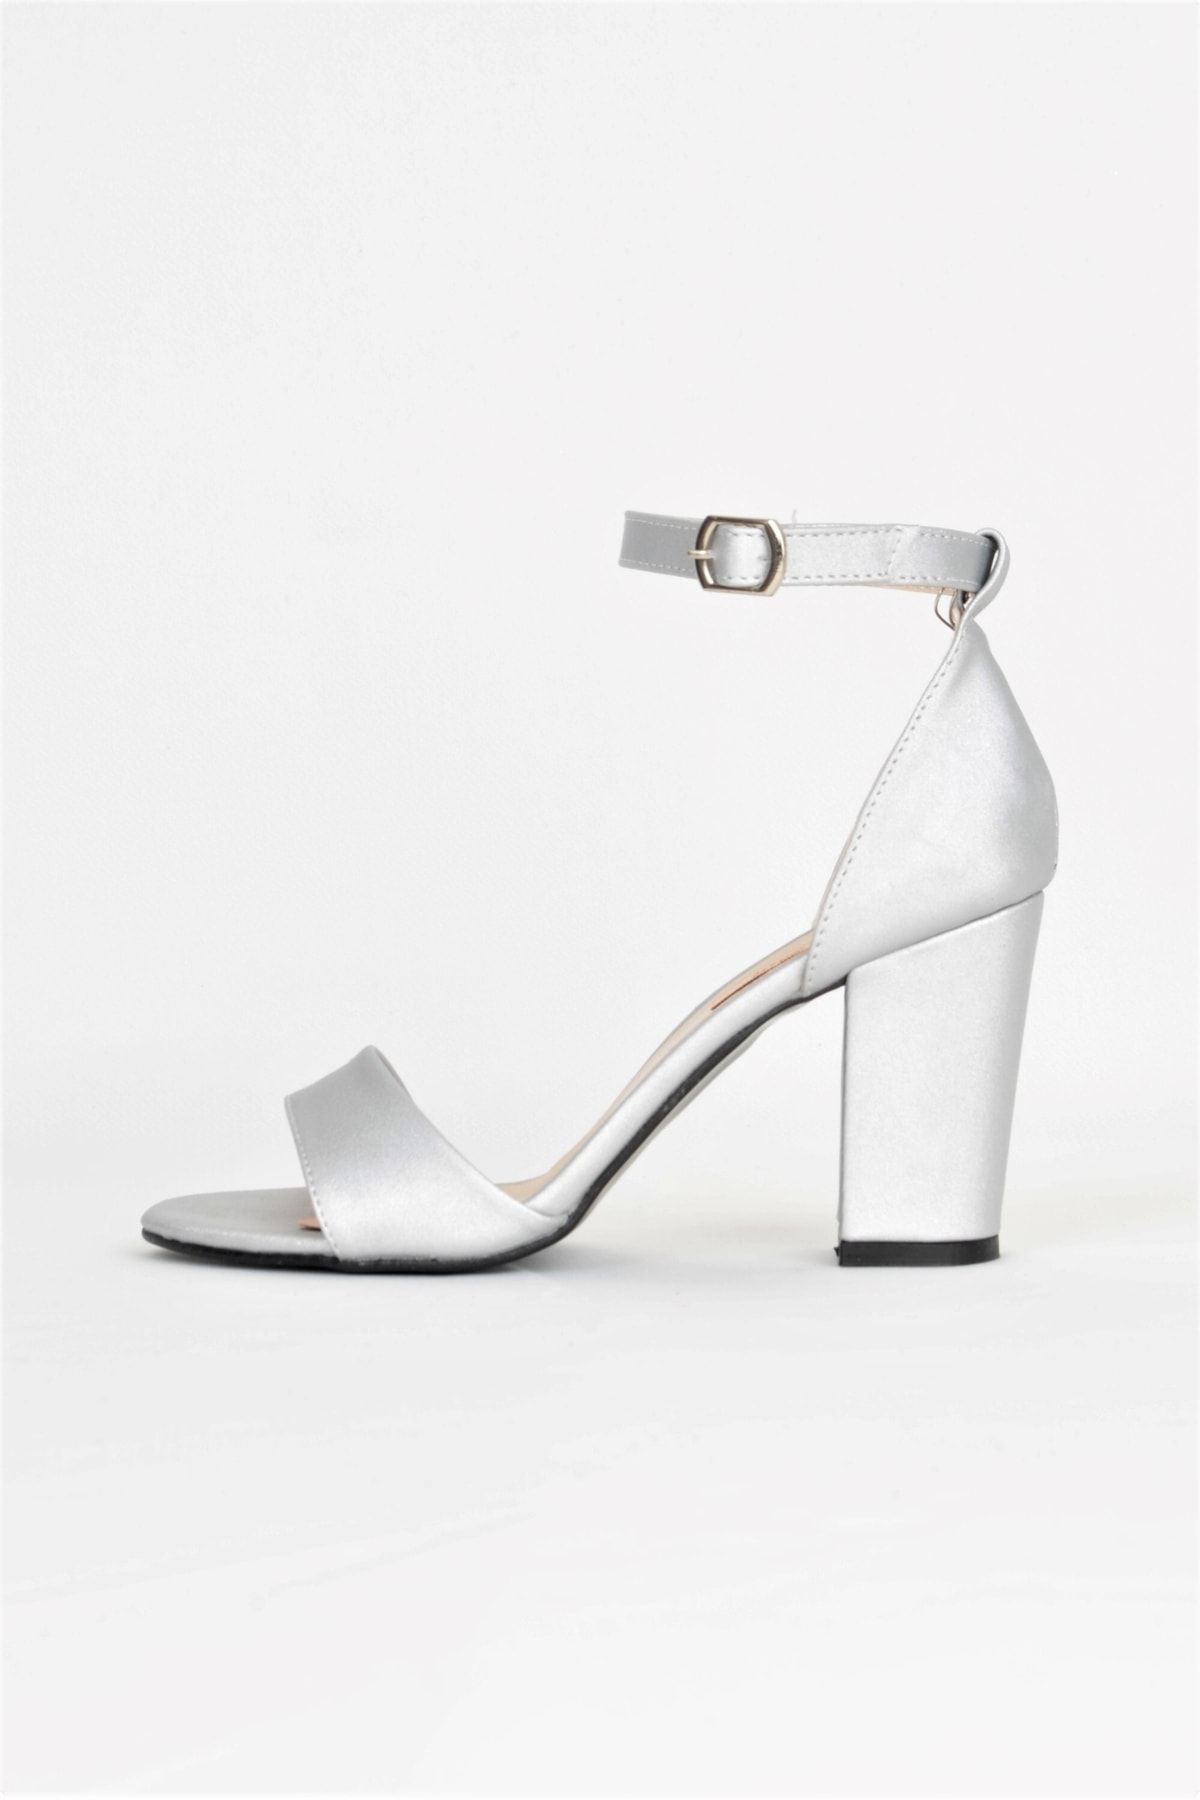 ALİS DRESS Gümüş Saten Tek Bantlı 9 Cm Topuklu Sandalet